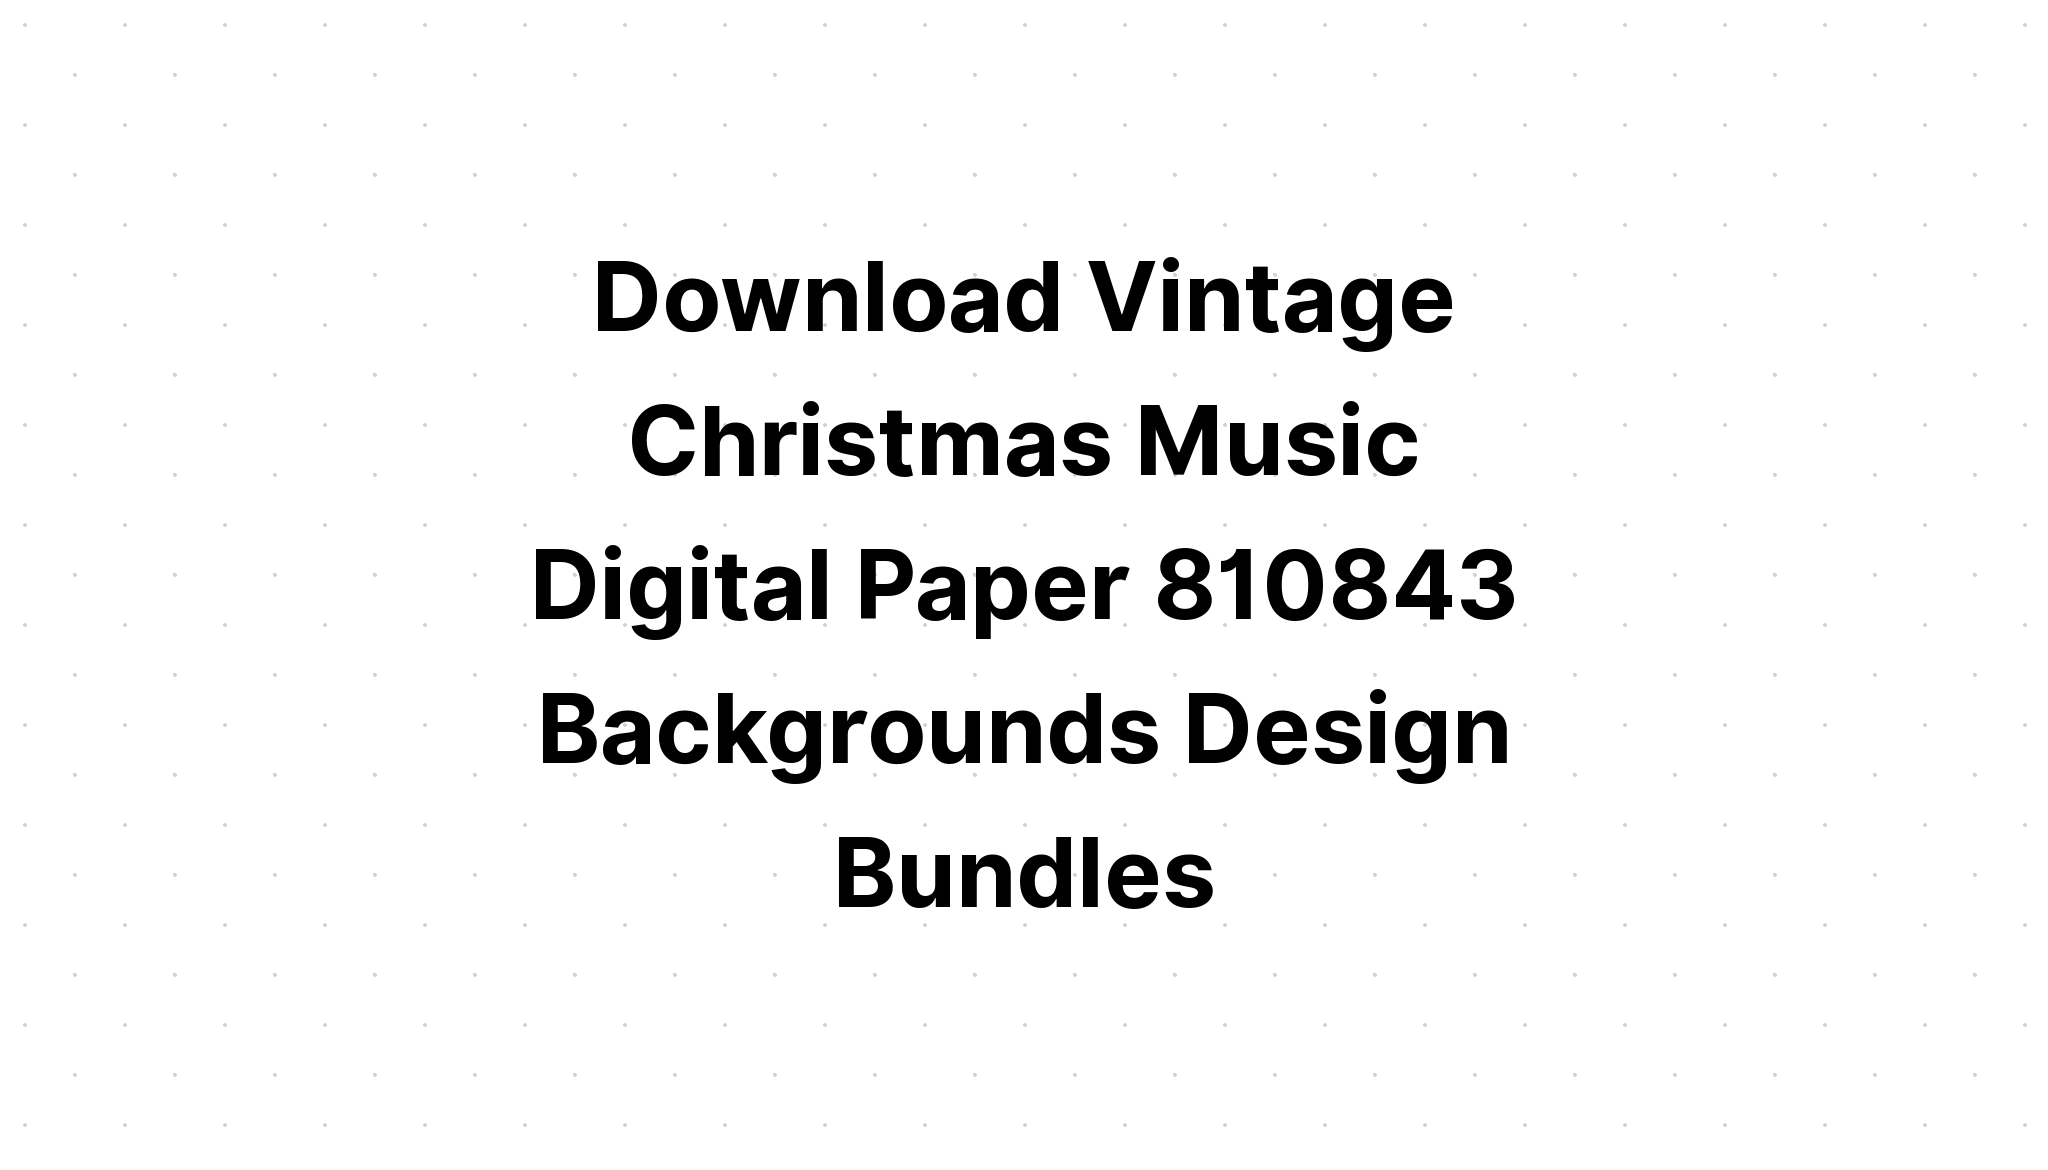 Download Vintage Christmas Music Digital Paper SVG File